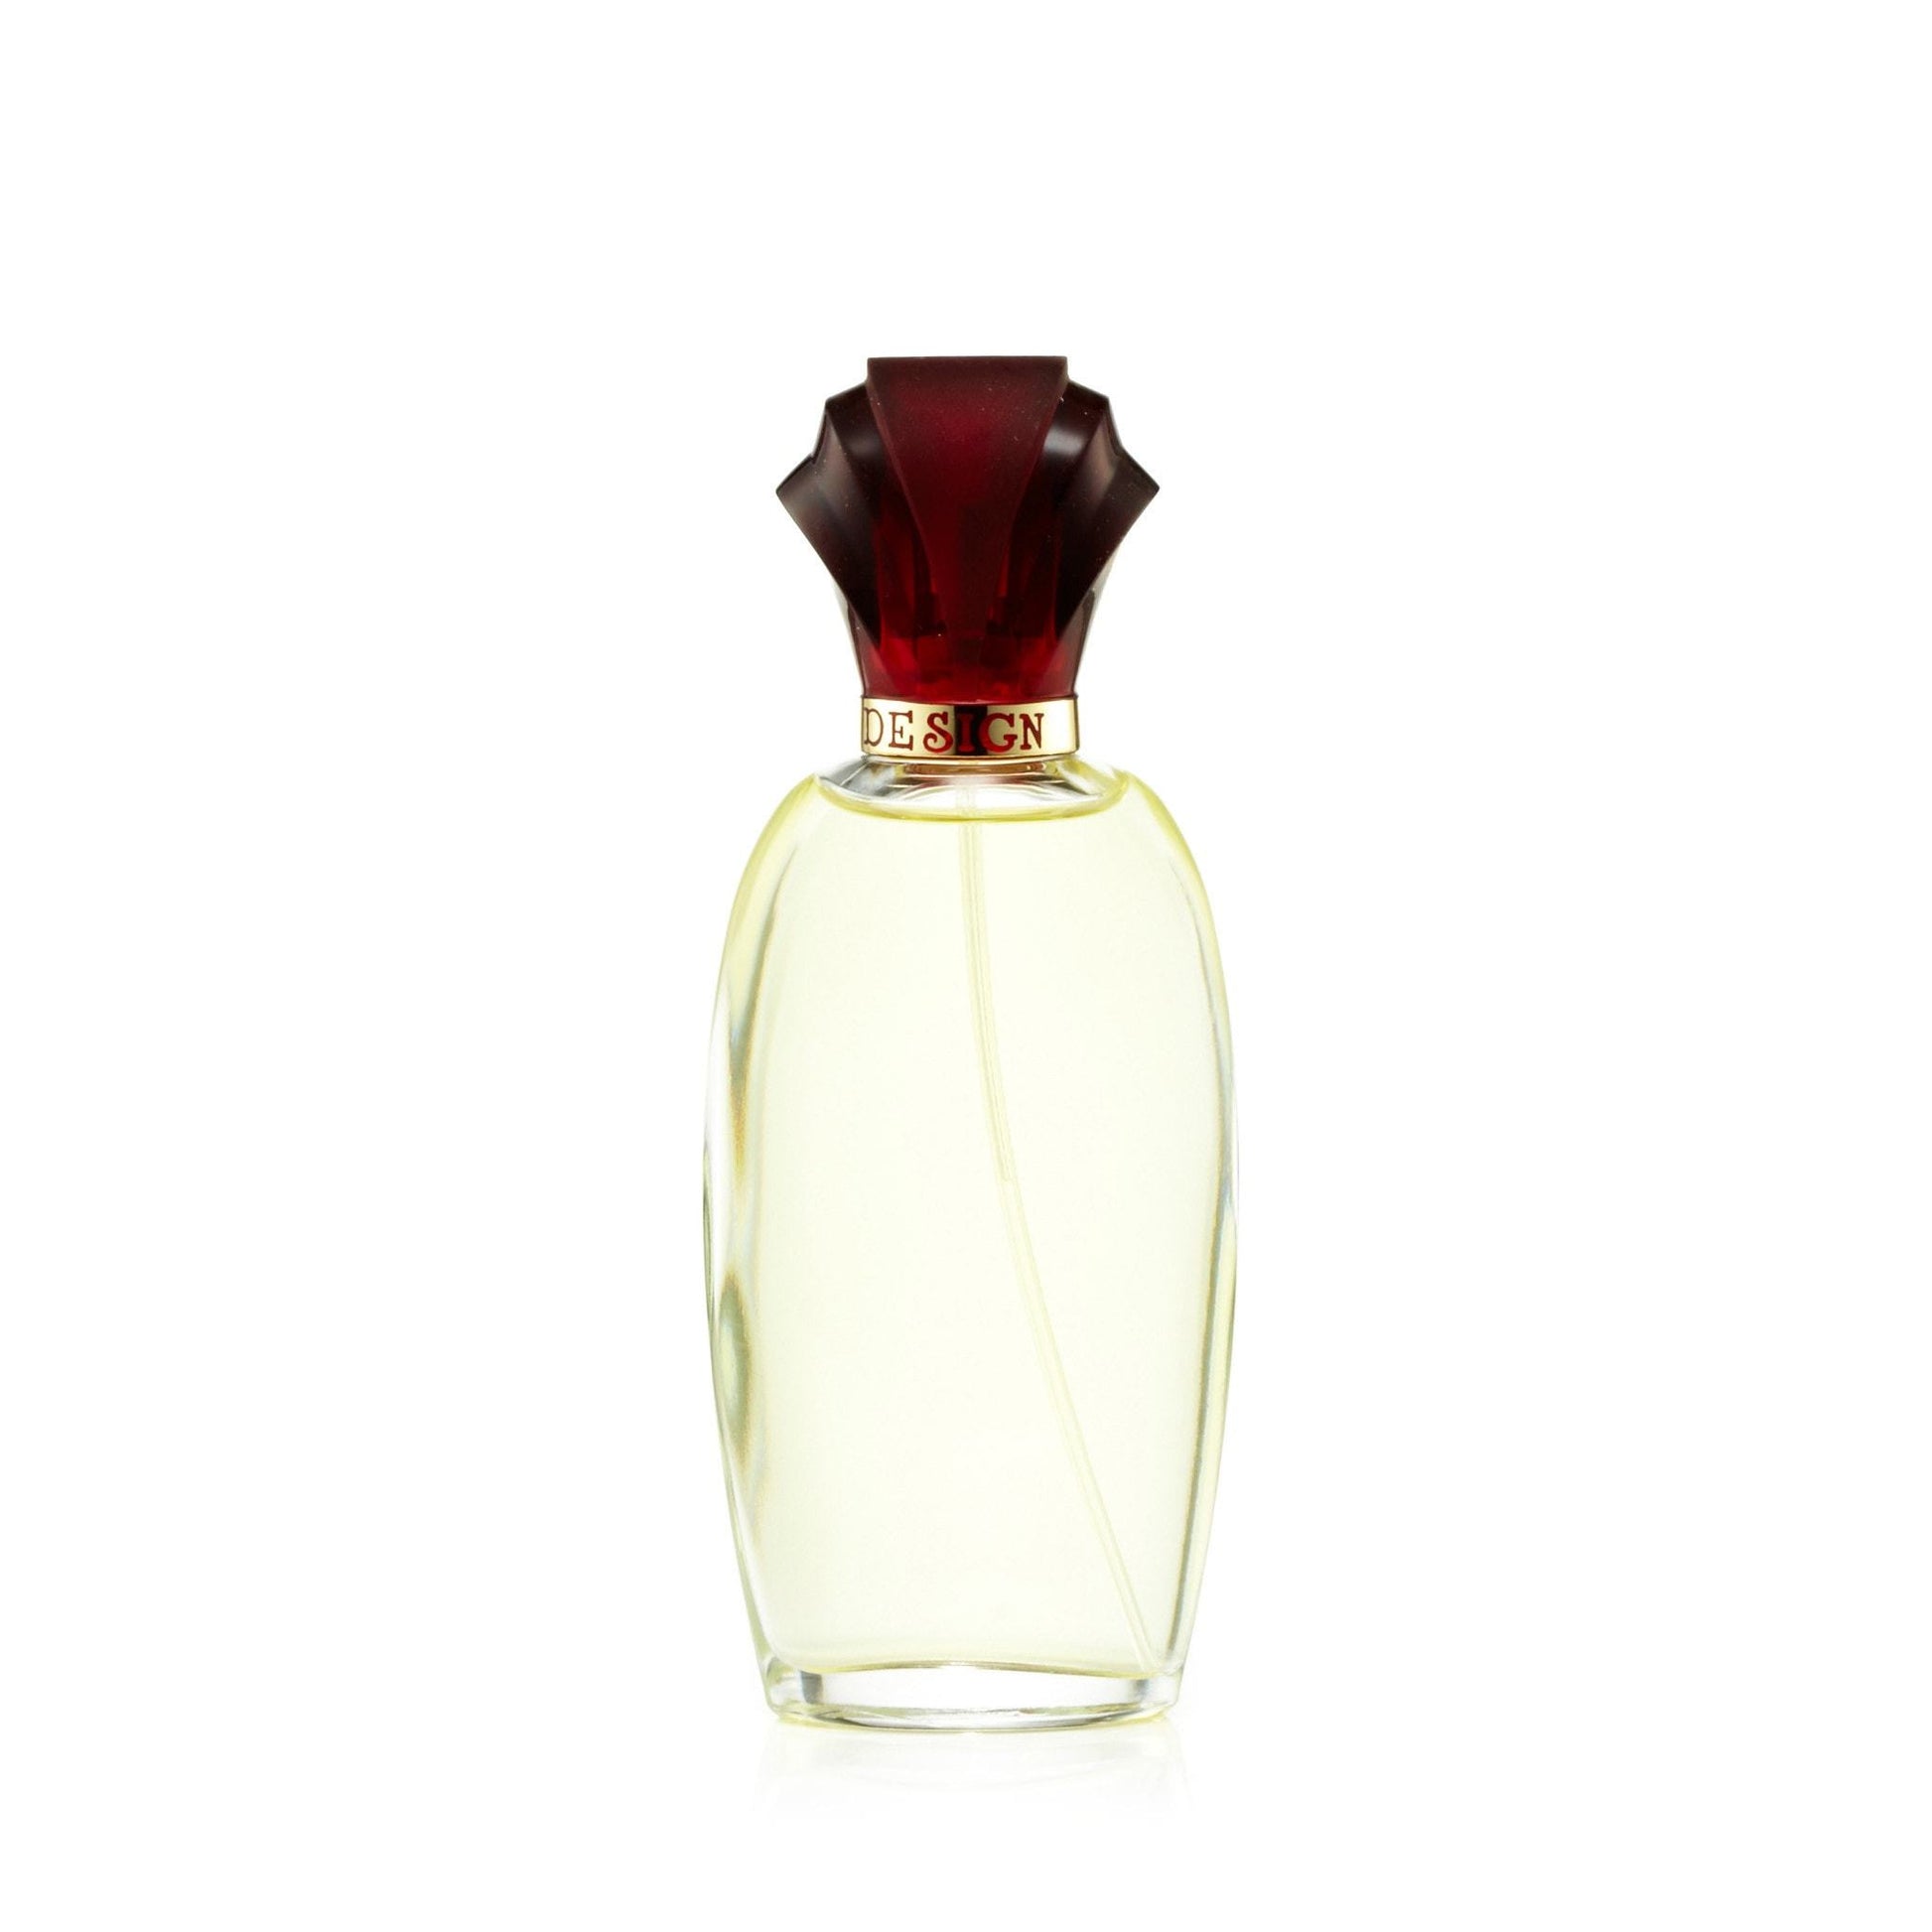 Design Eau de Parfum Spray for Women by Paul Sebastian, Product image 1